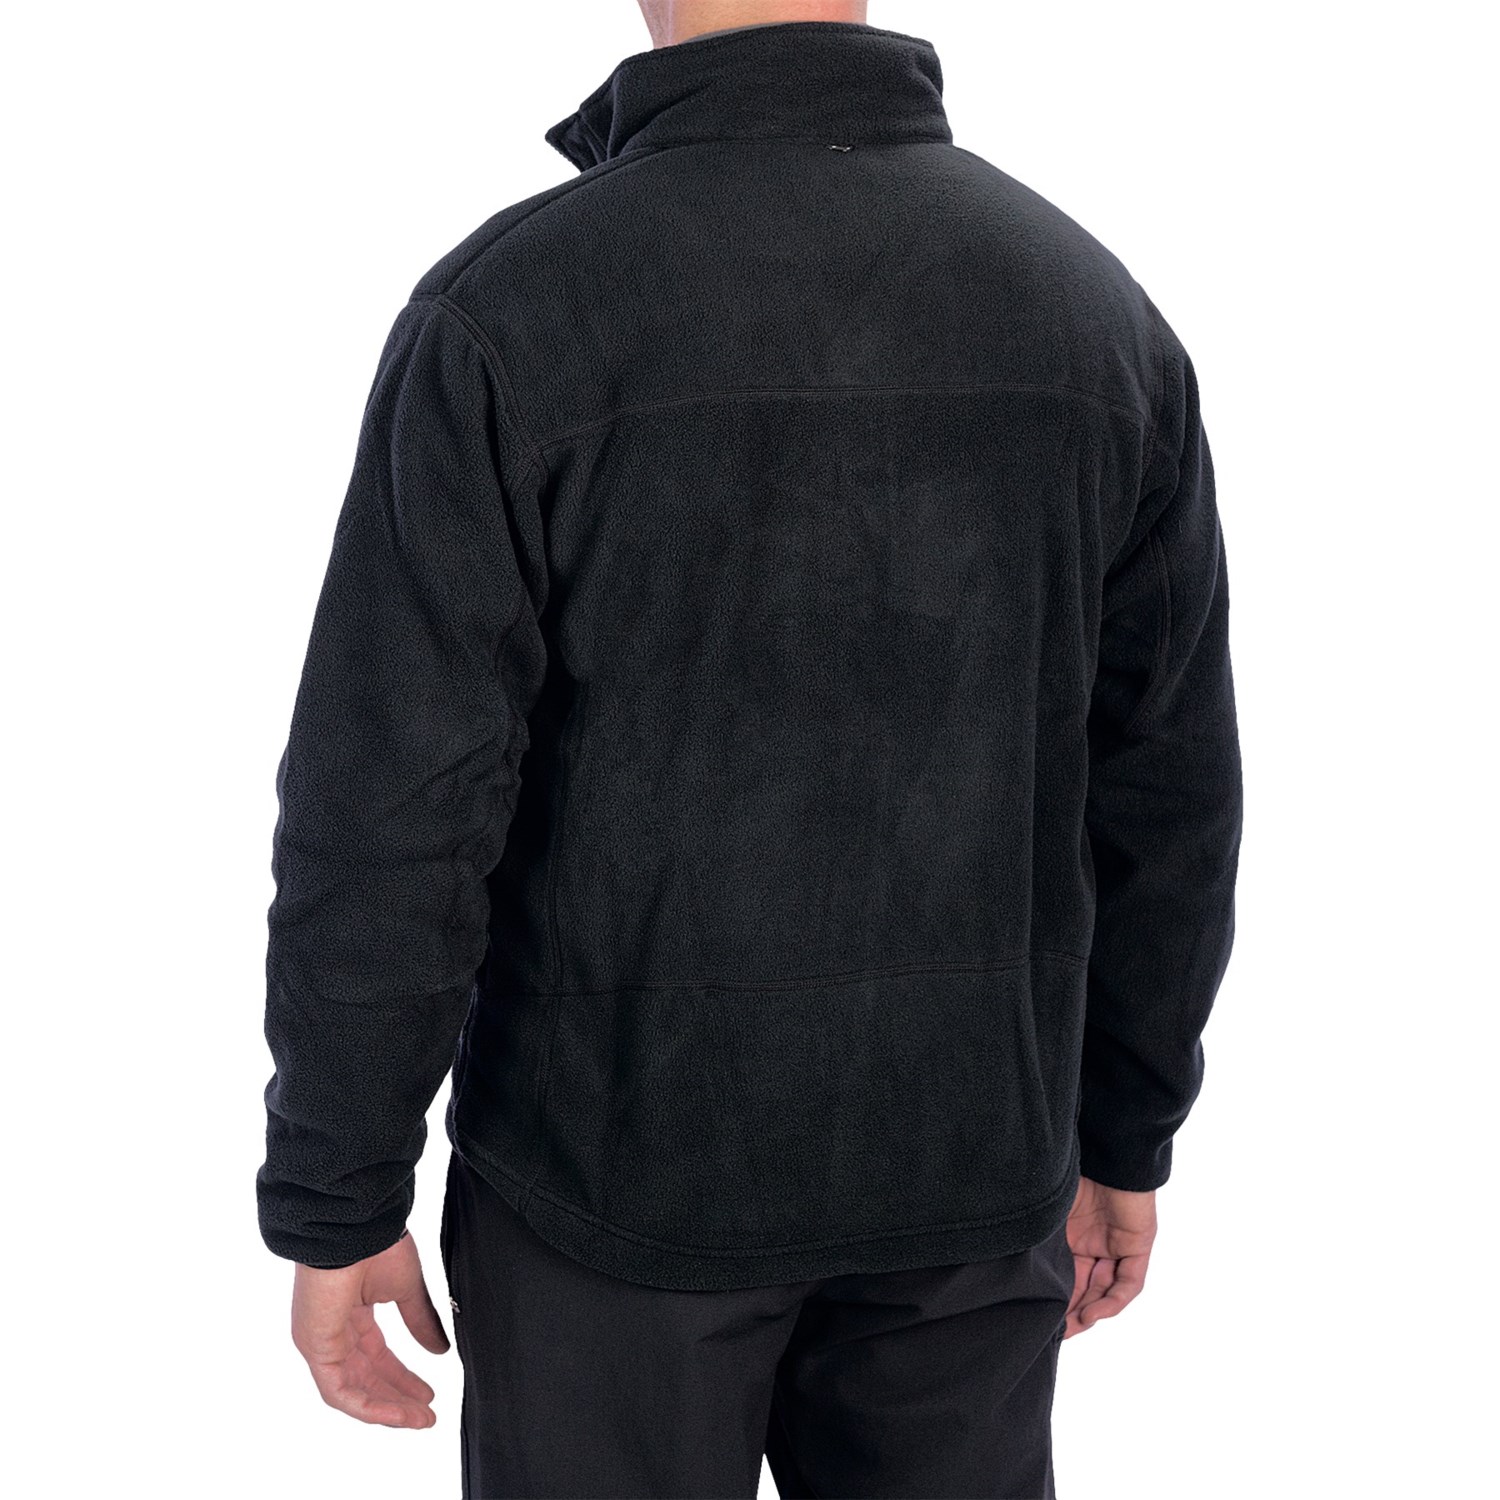 Hi-Tec Young Falls Jacket (For Men) 6646D - Save 42%